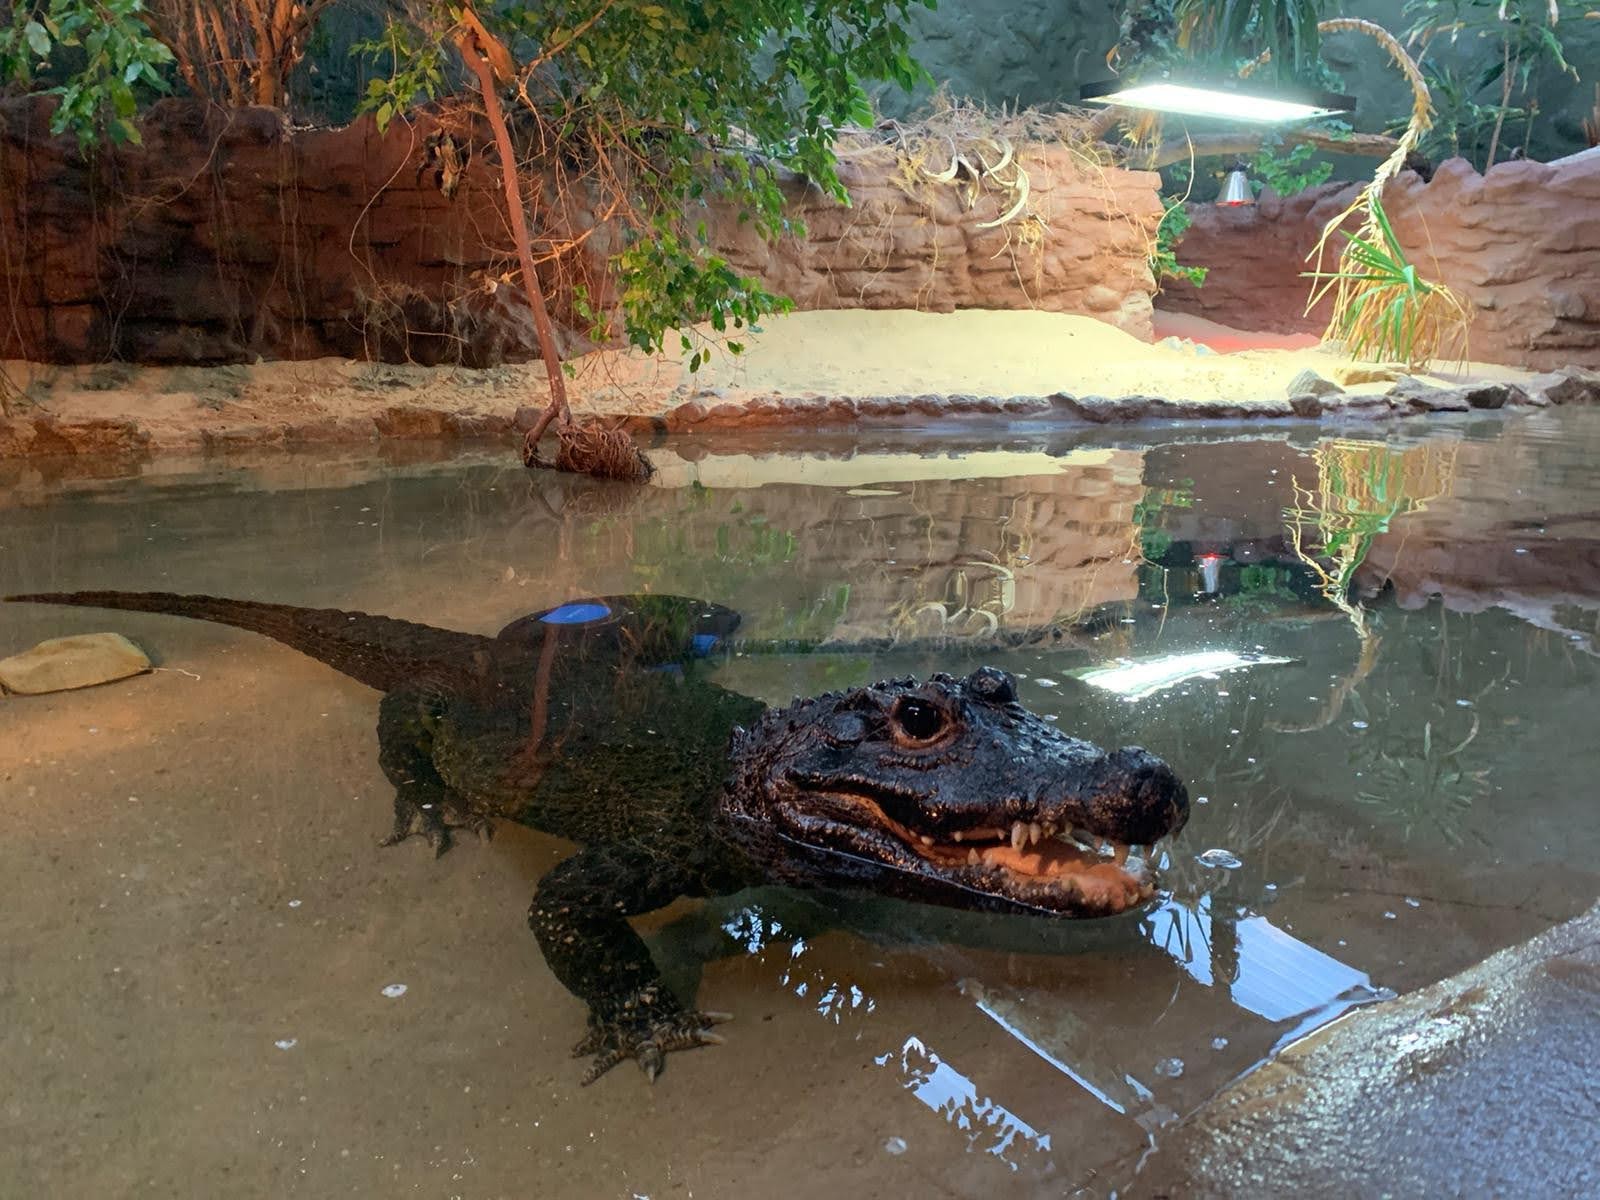 Crocodile (West African Dwarf)